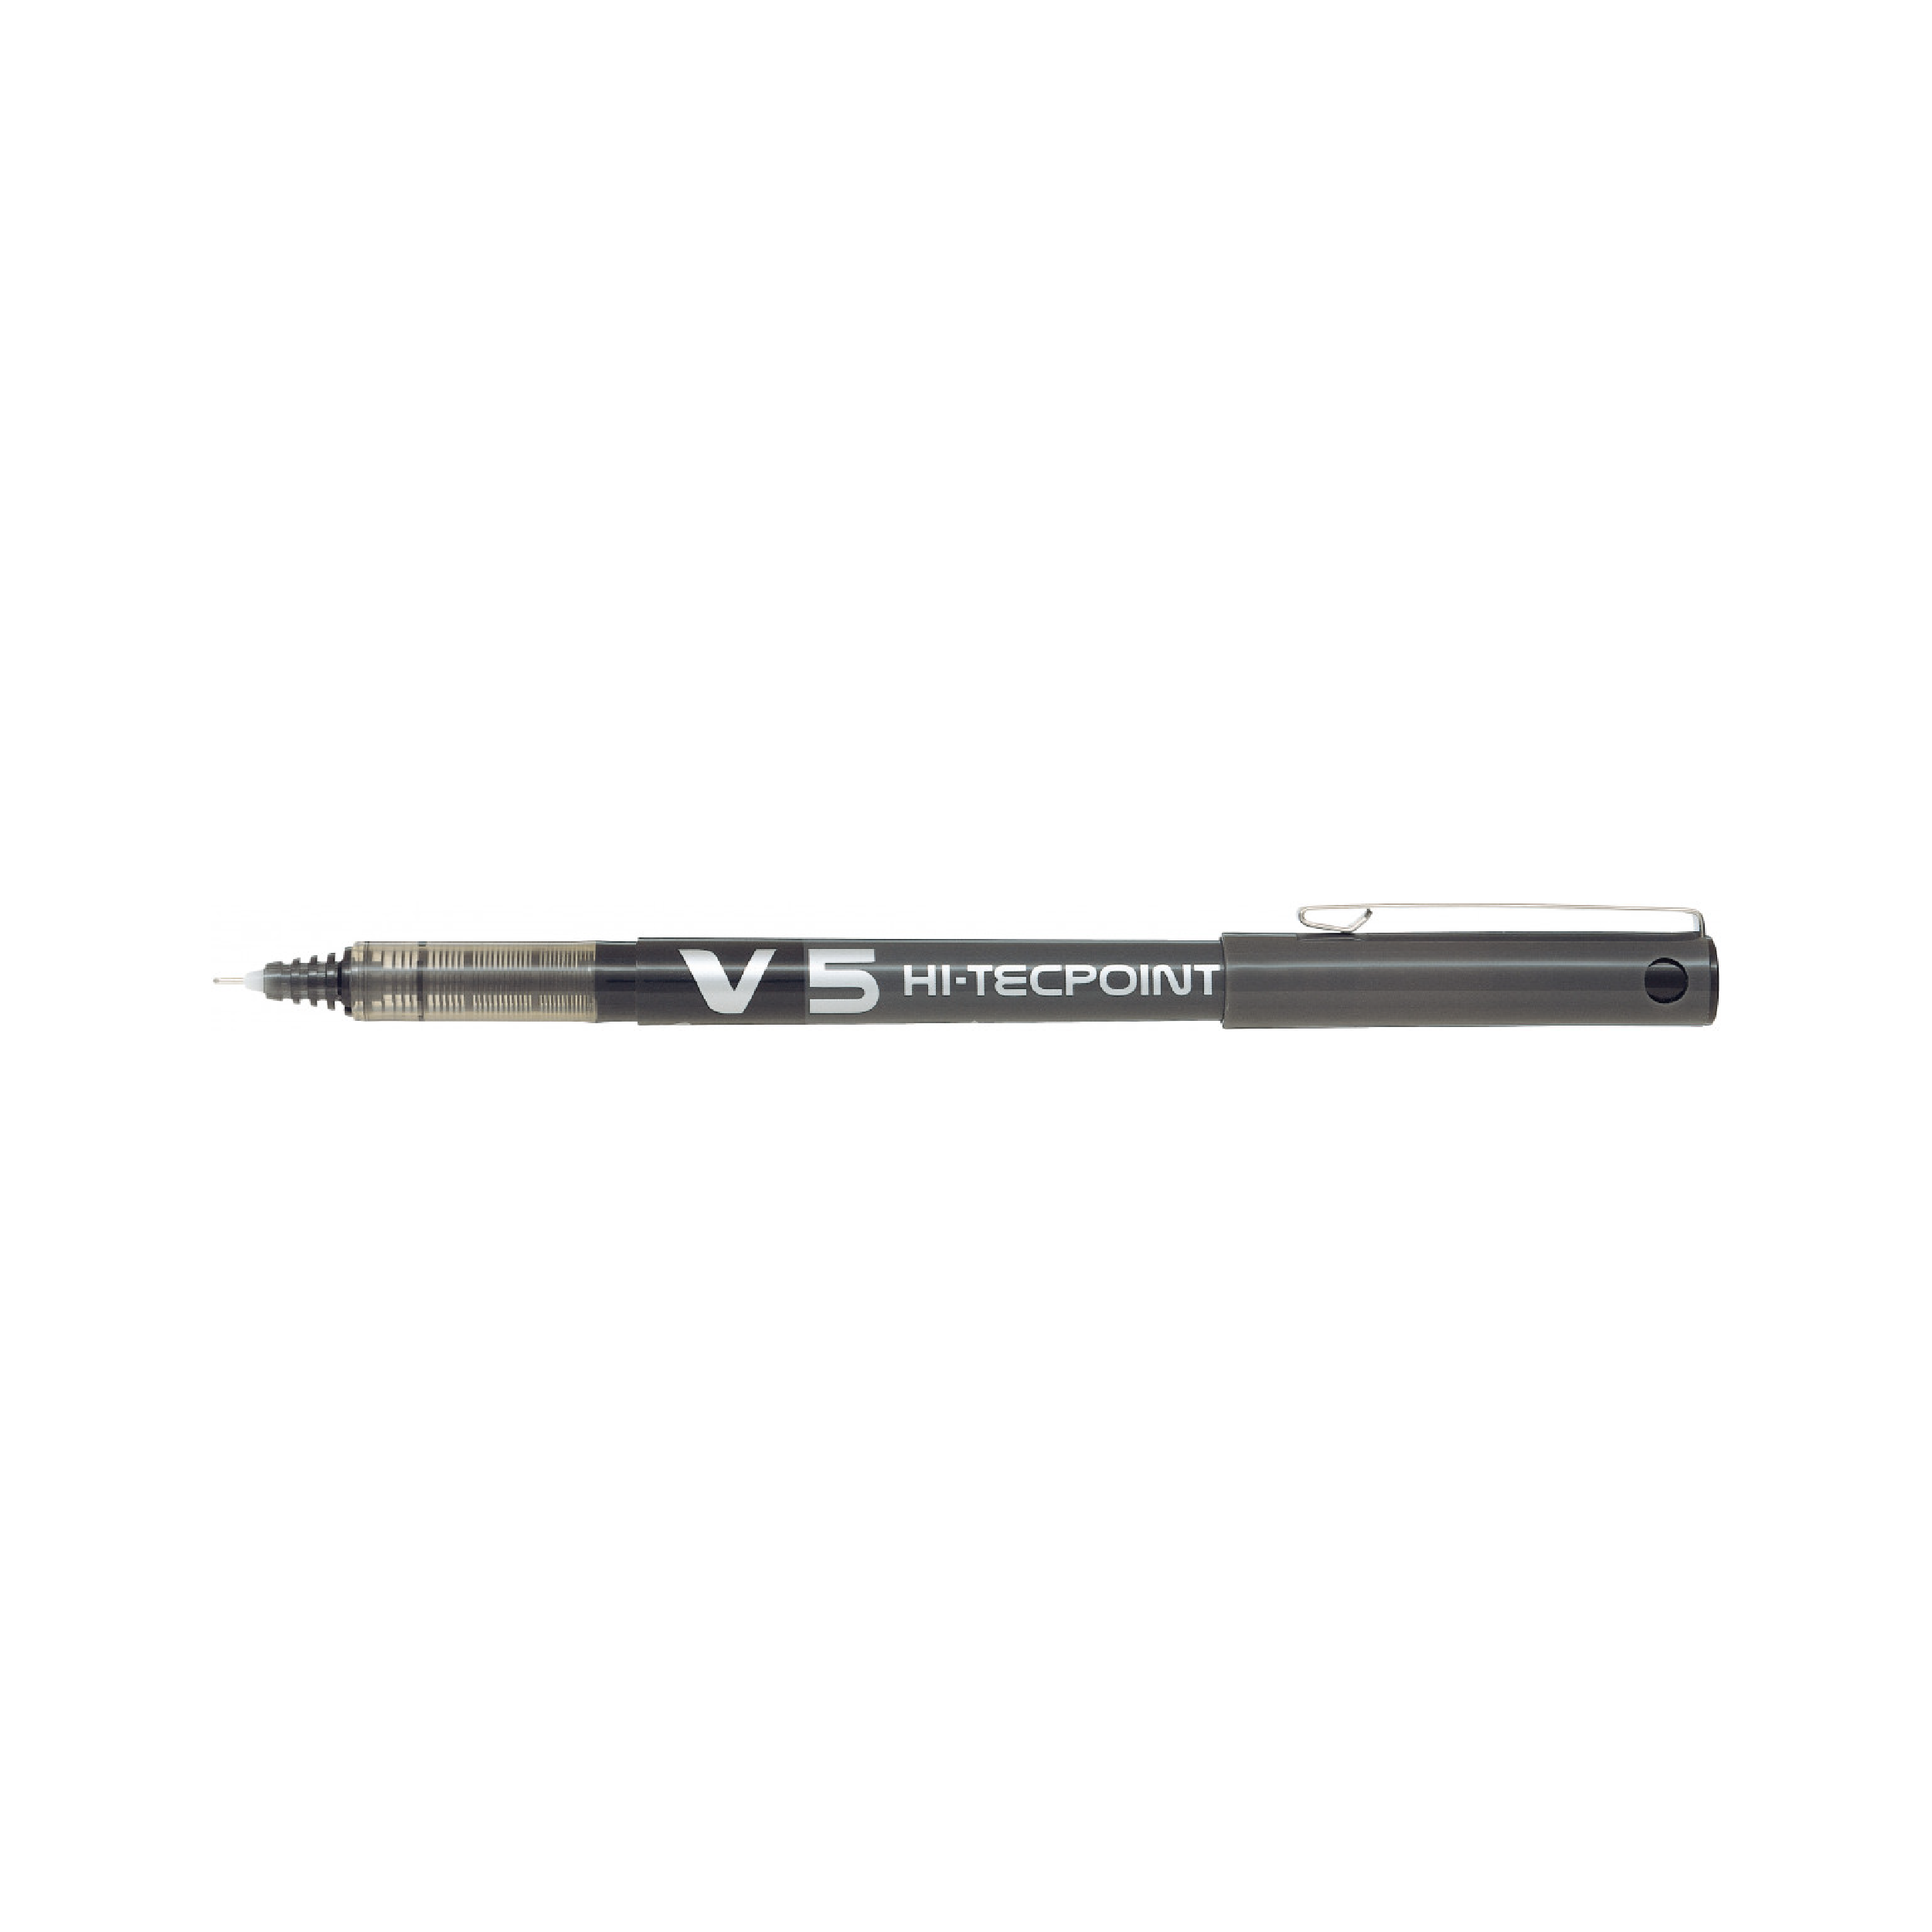 Pilot Hi-Tecpoint Rollerball Pen, 0.5mm (BX-V5)